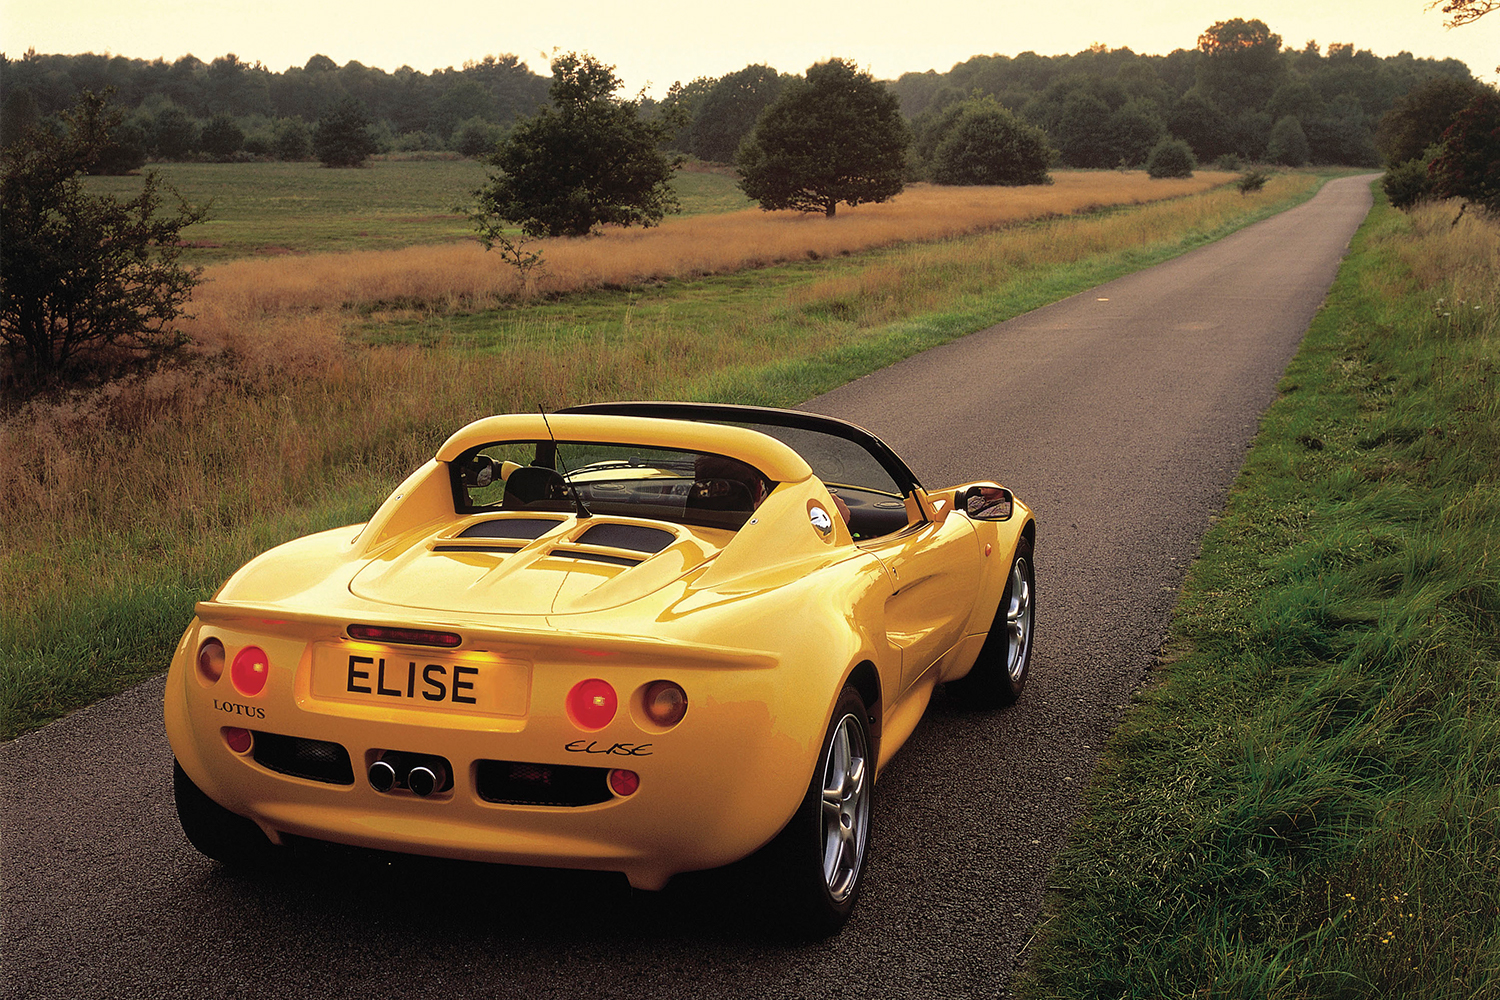 Lotus Elise Series 2 in yellow